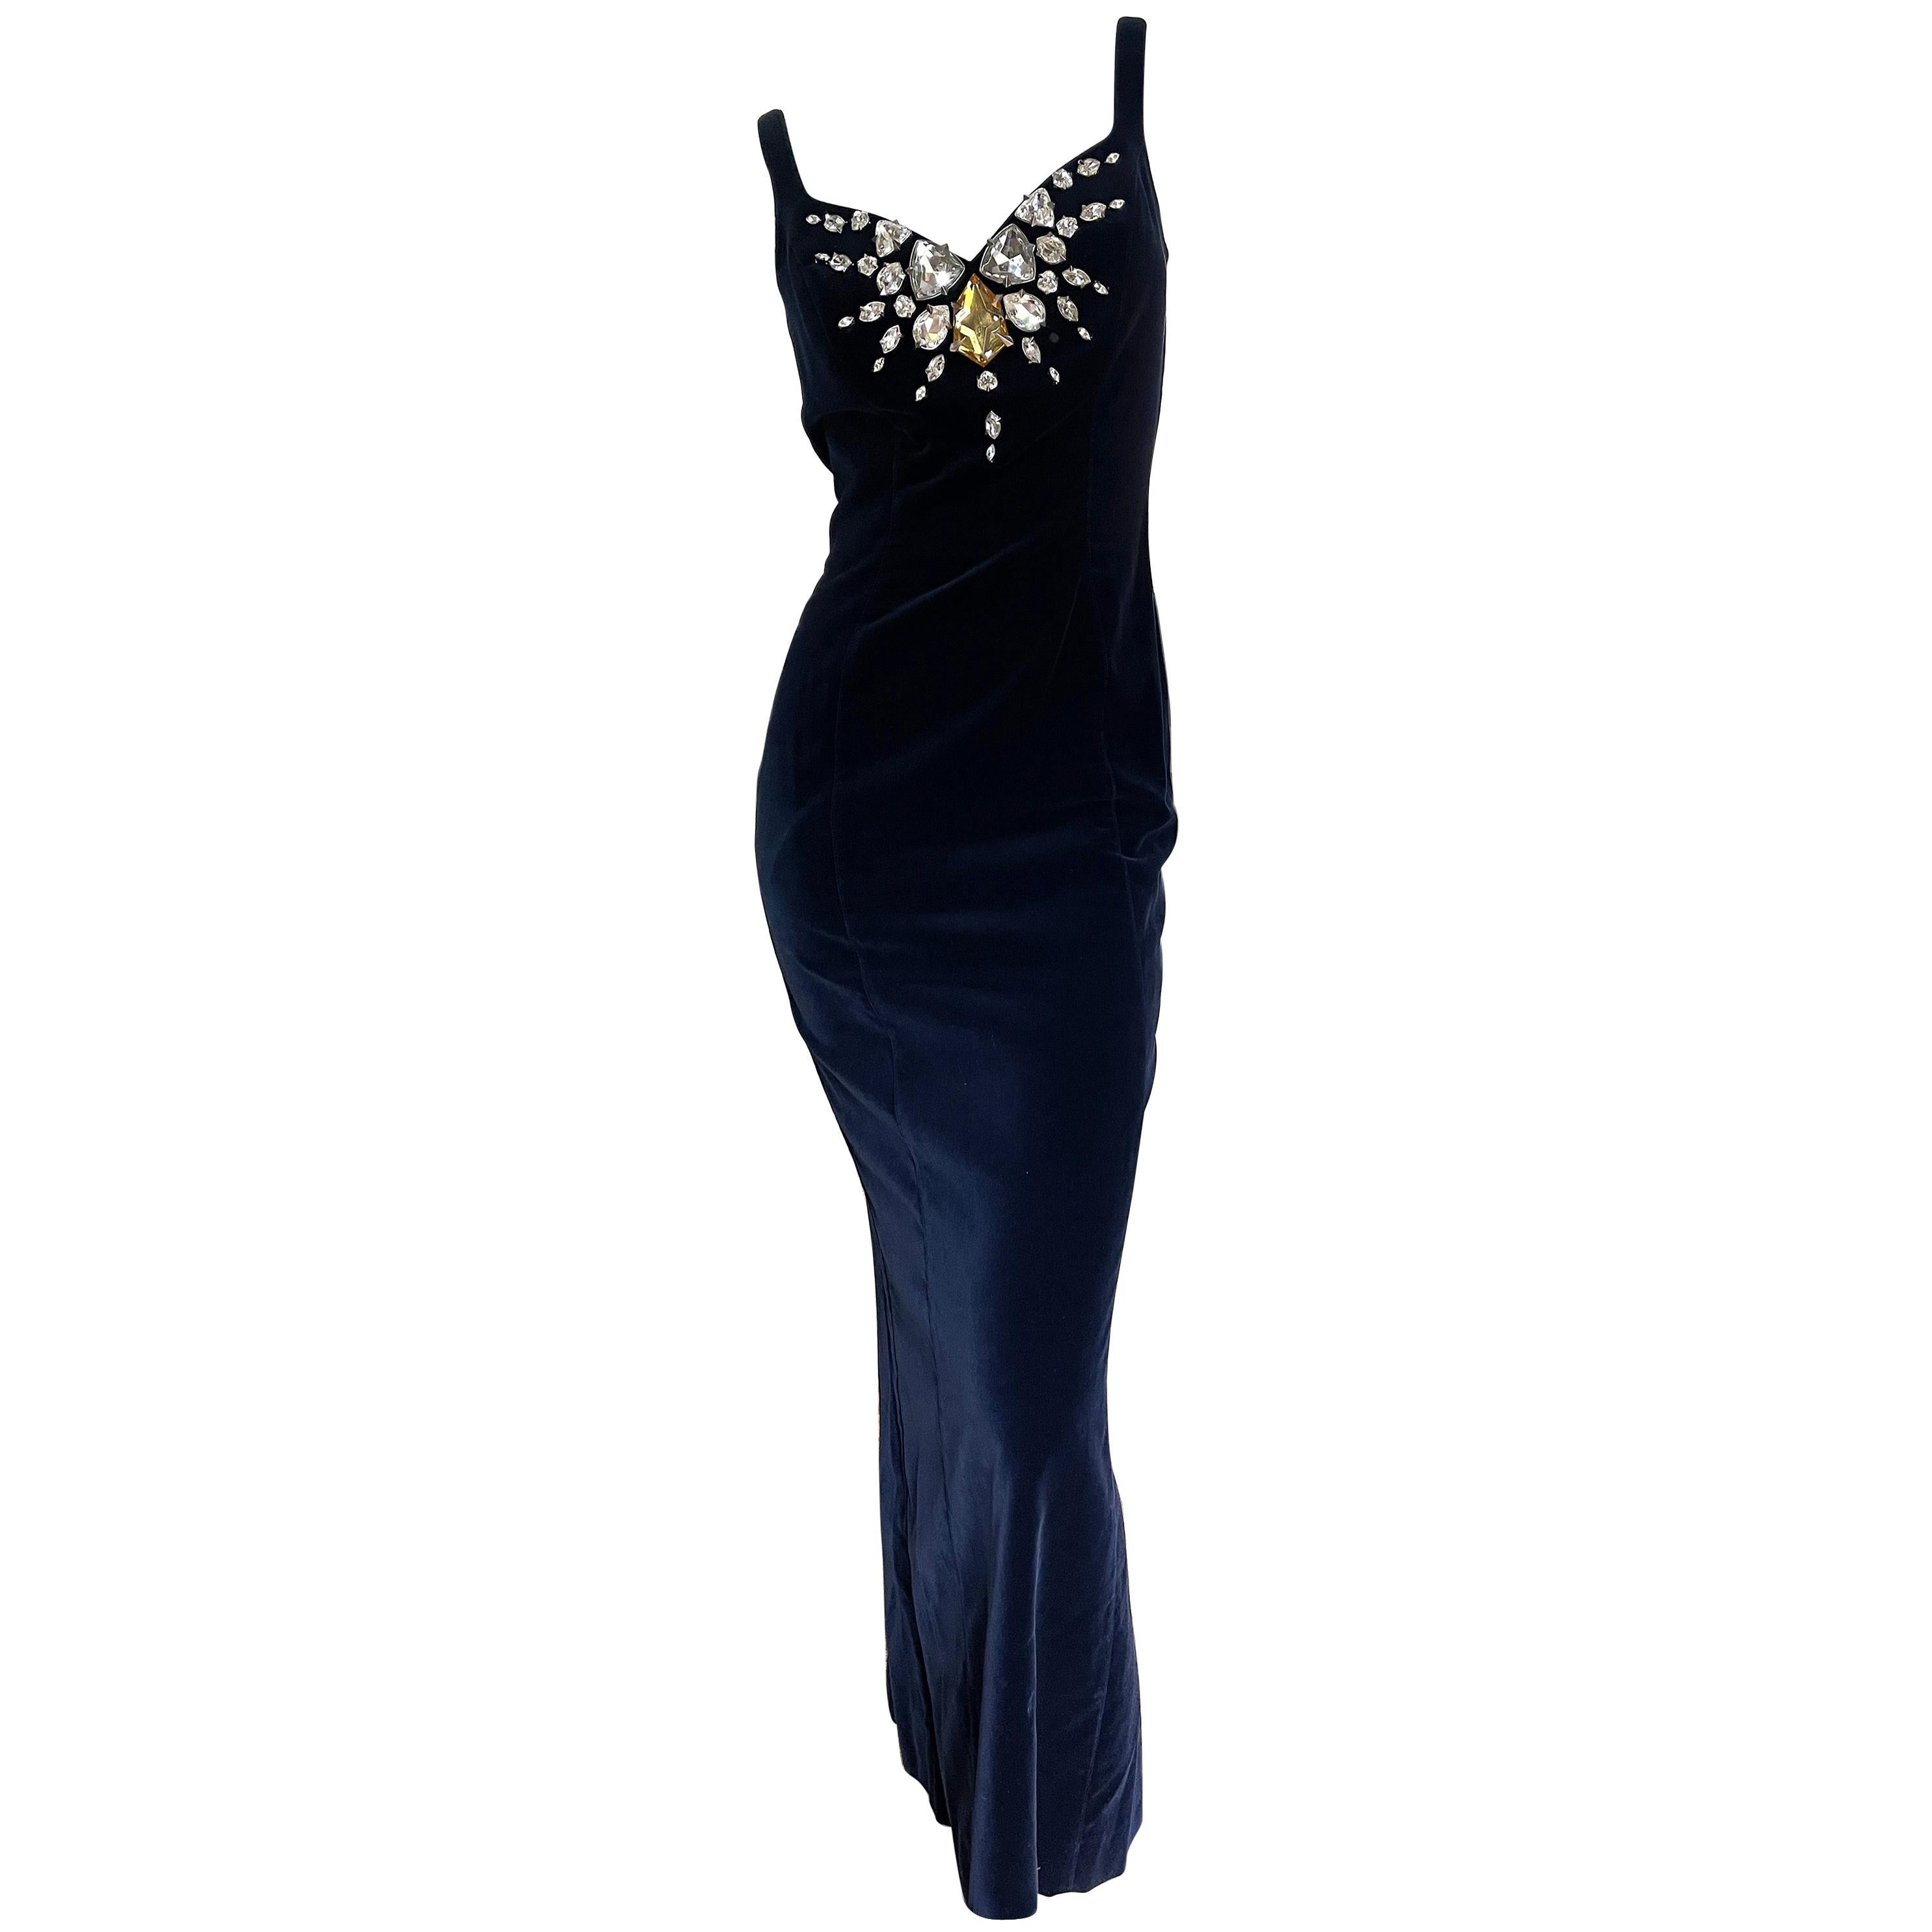 Thierry Mugler Vintage Blue Velvet Evening Dress with Gobsmacking Jewel Details For Sale